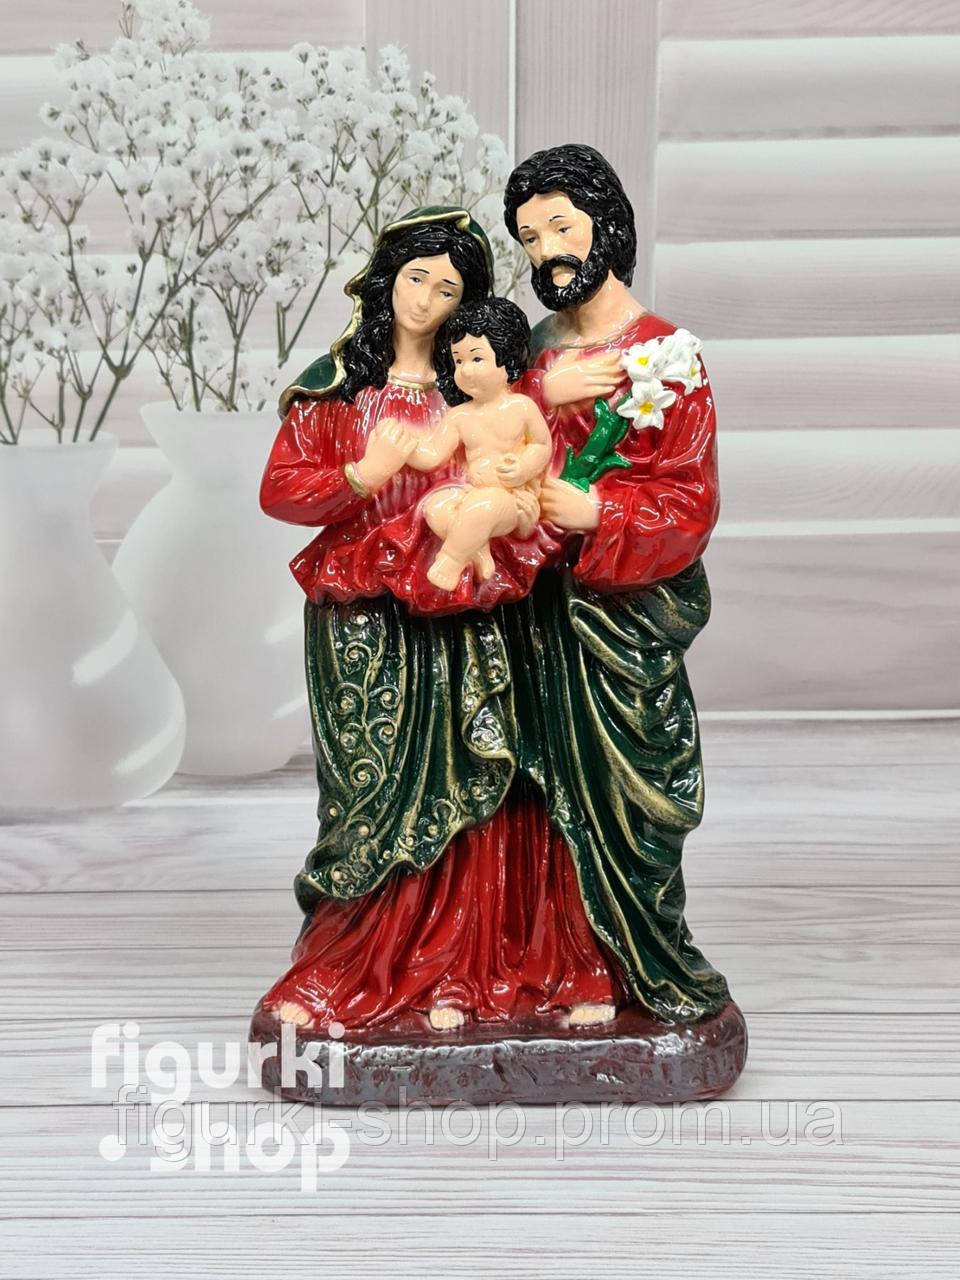 

Декоративная Статуэтка Святое семейство с ребёнком цветная 47 см